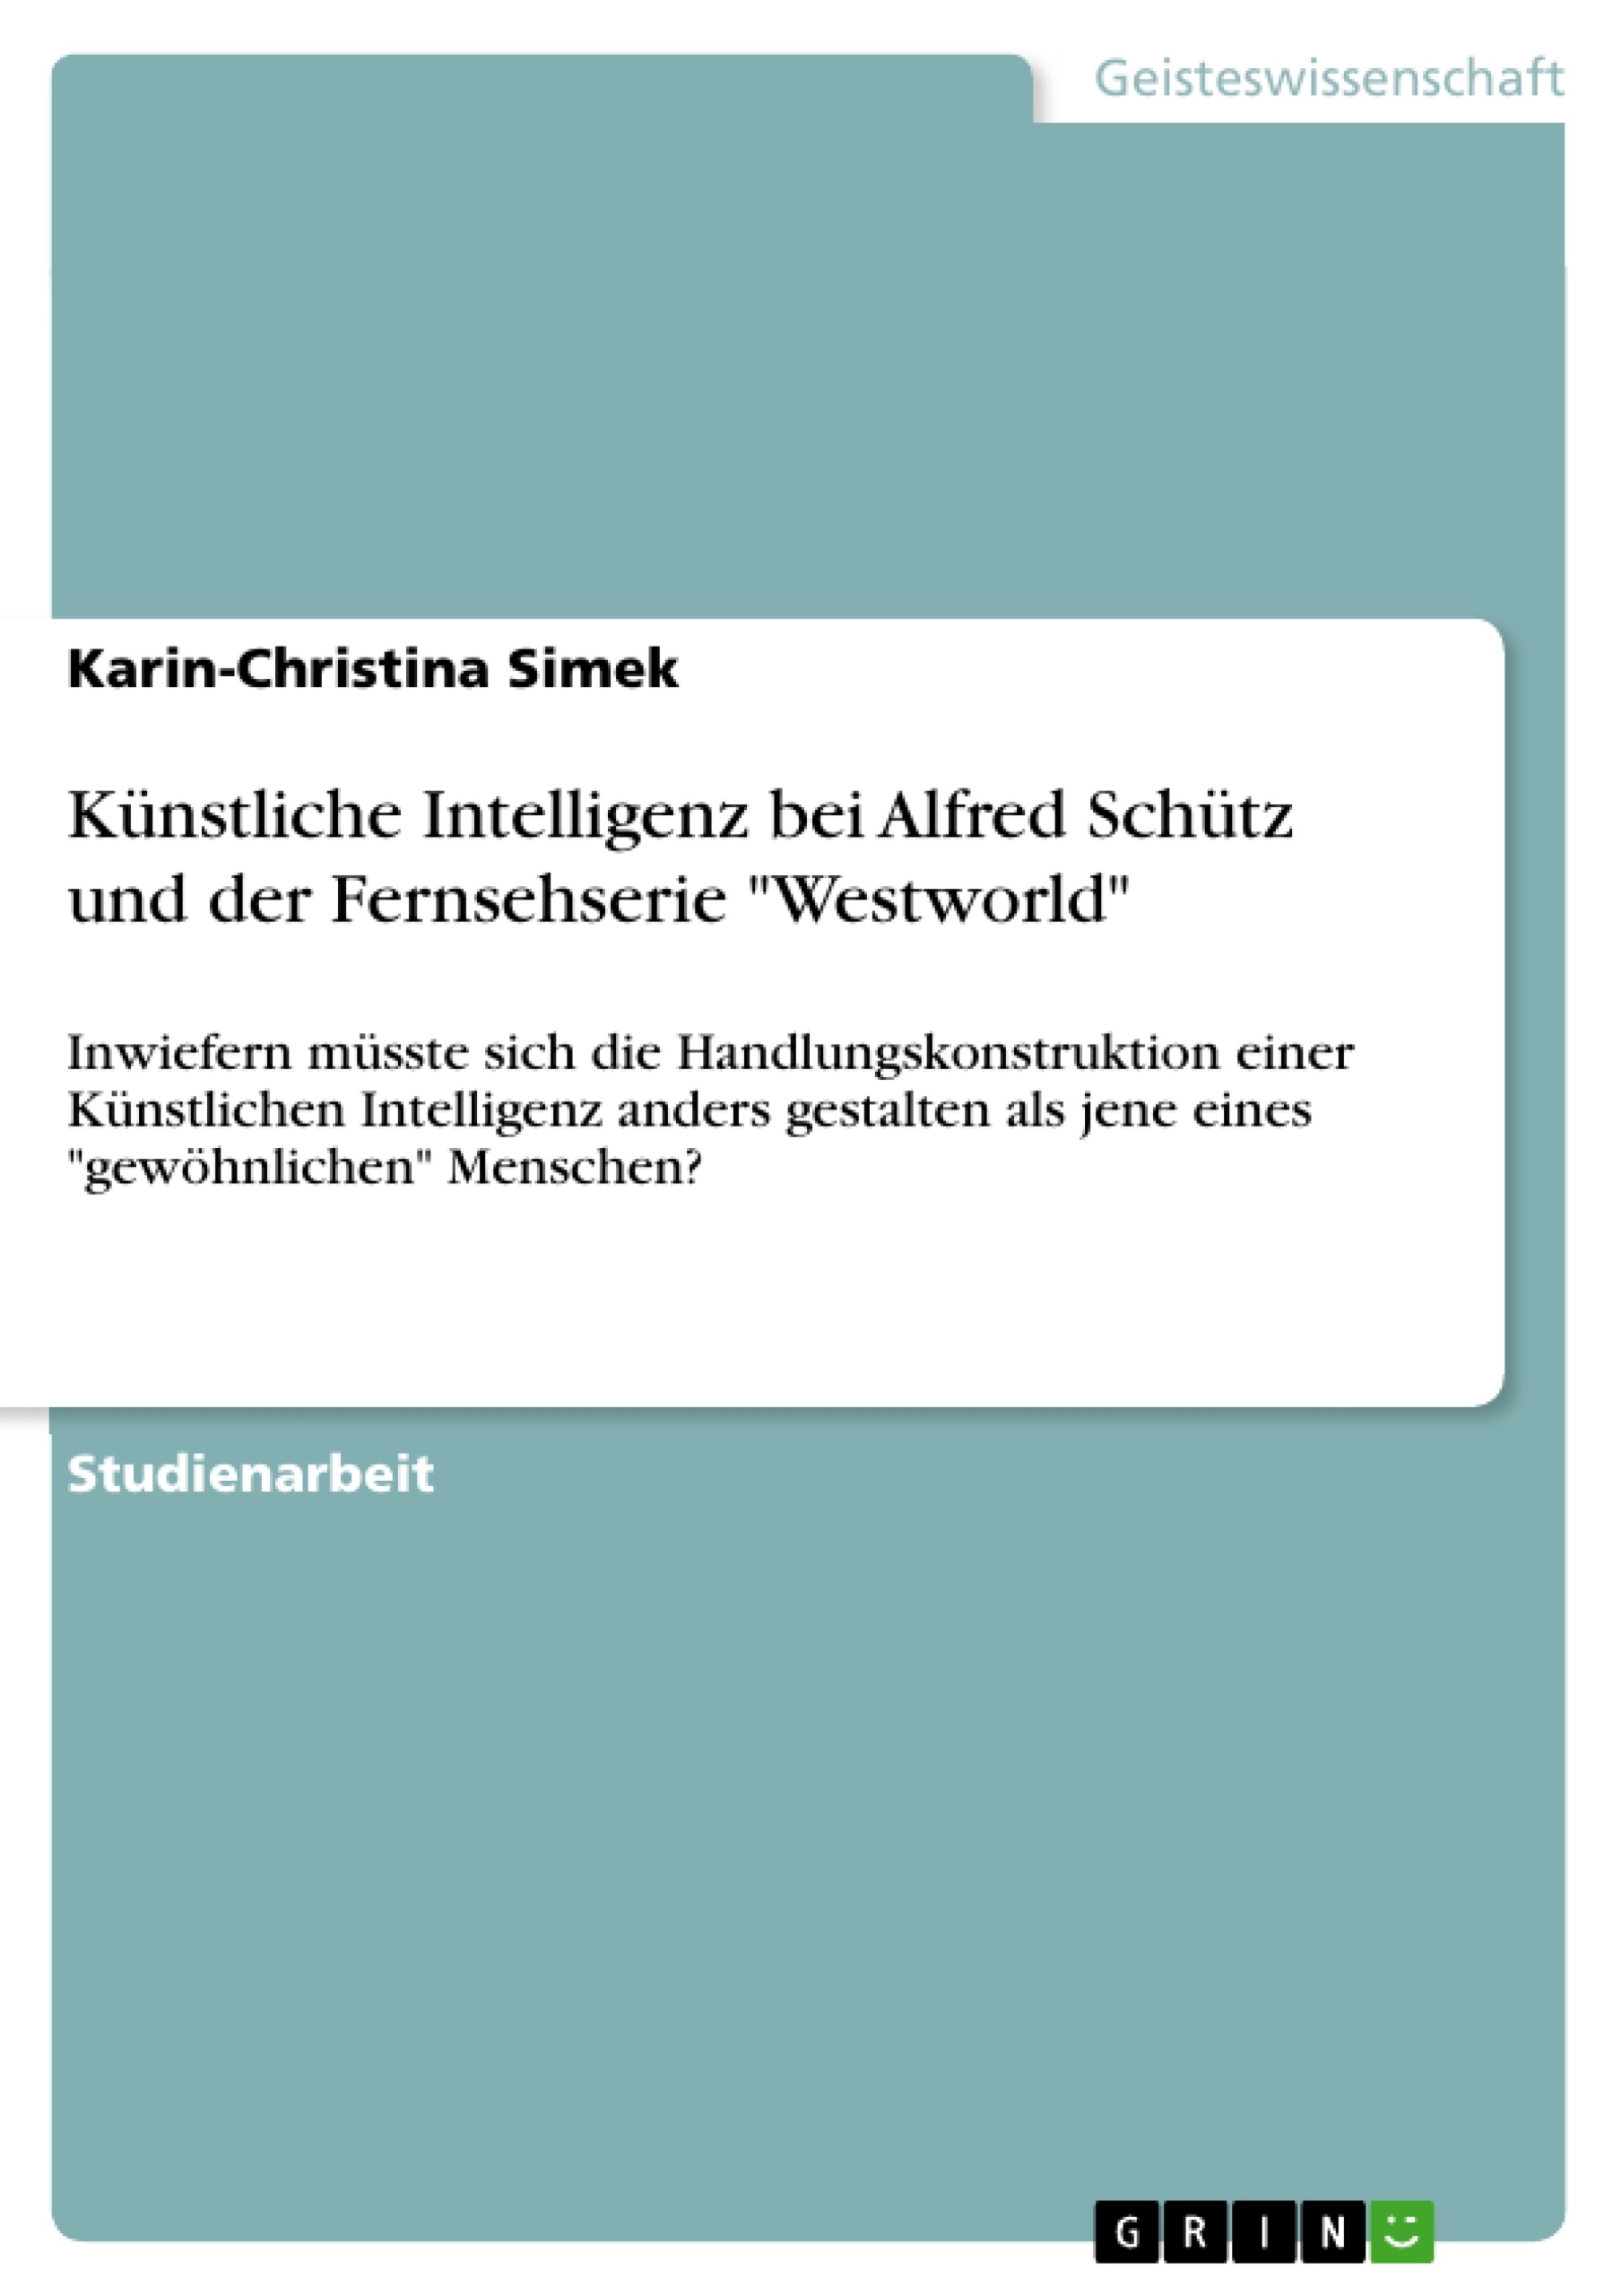 Title: Künstliche Intelligenz bei Alfred Schütz und der Fernsehserie "Westworld"